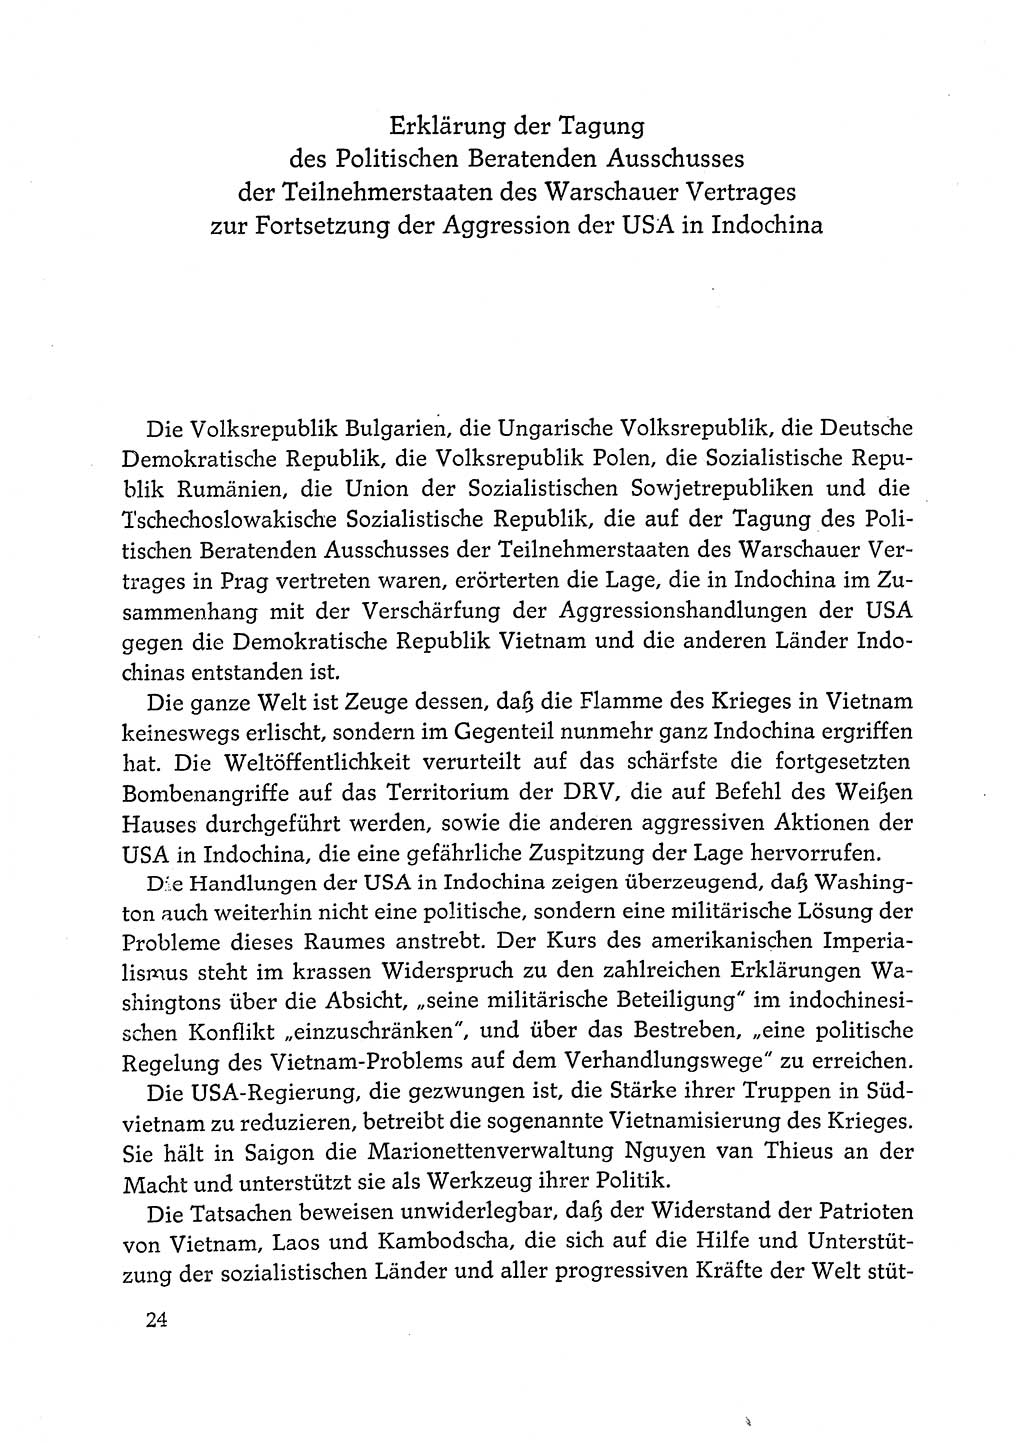 Dokumente der Sozialistischen Einheitspartei Deutschlands (SED) [Deutsche Demokratische Republik (DDR)] 1972-1973, Seite 24 (Dok. SED DDR 1972-1973, S. 24)